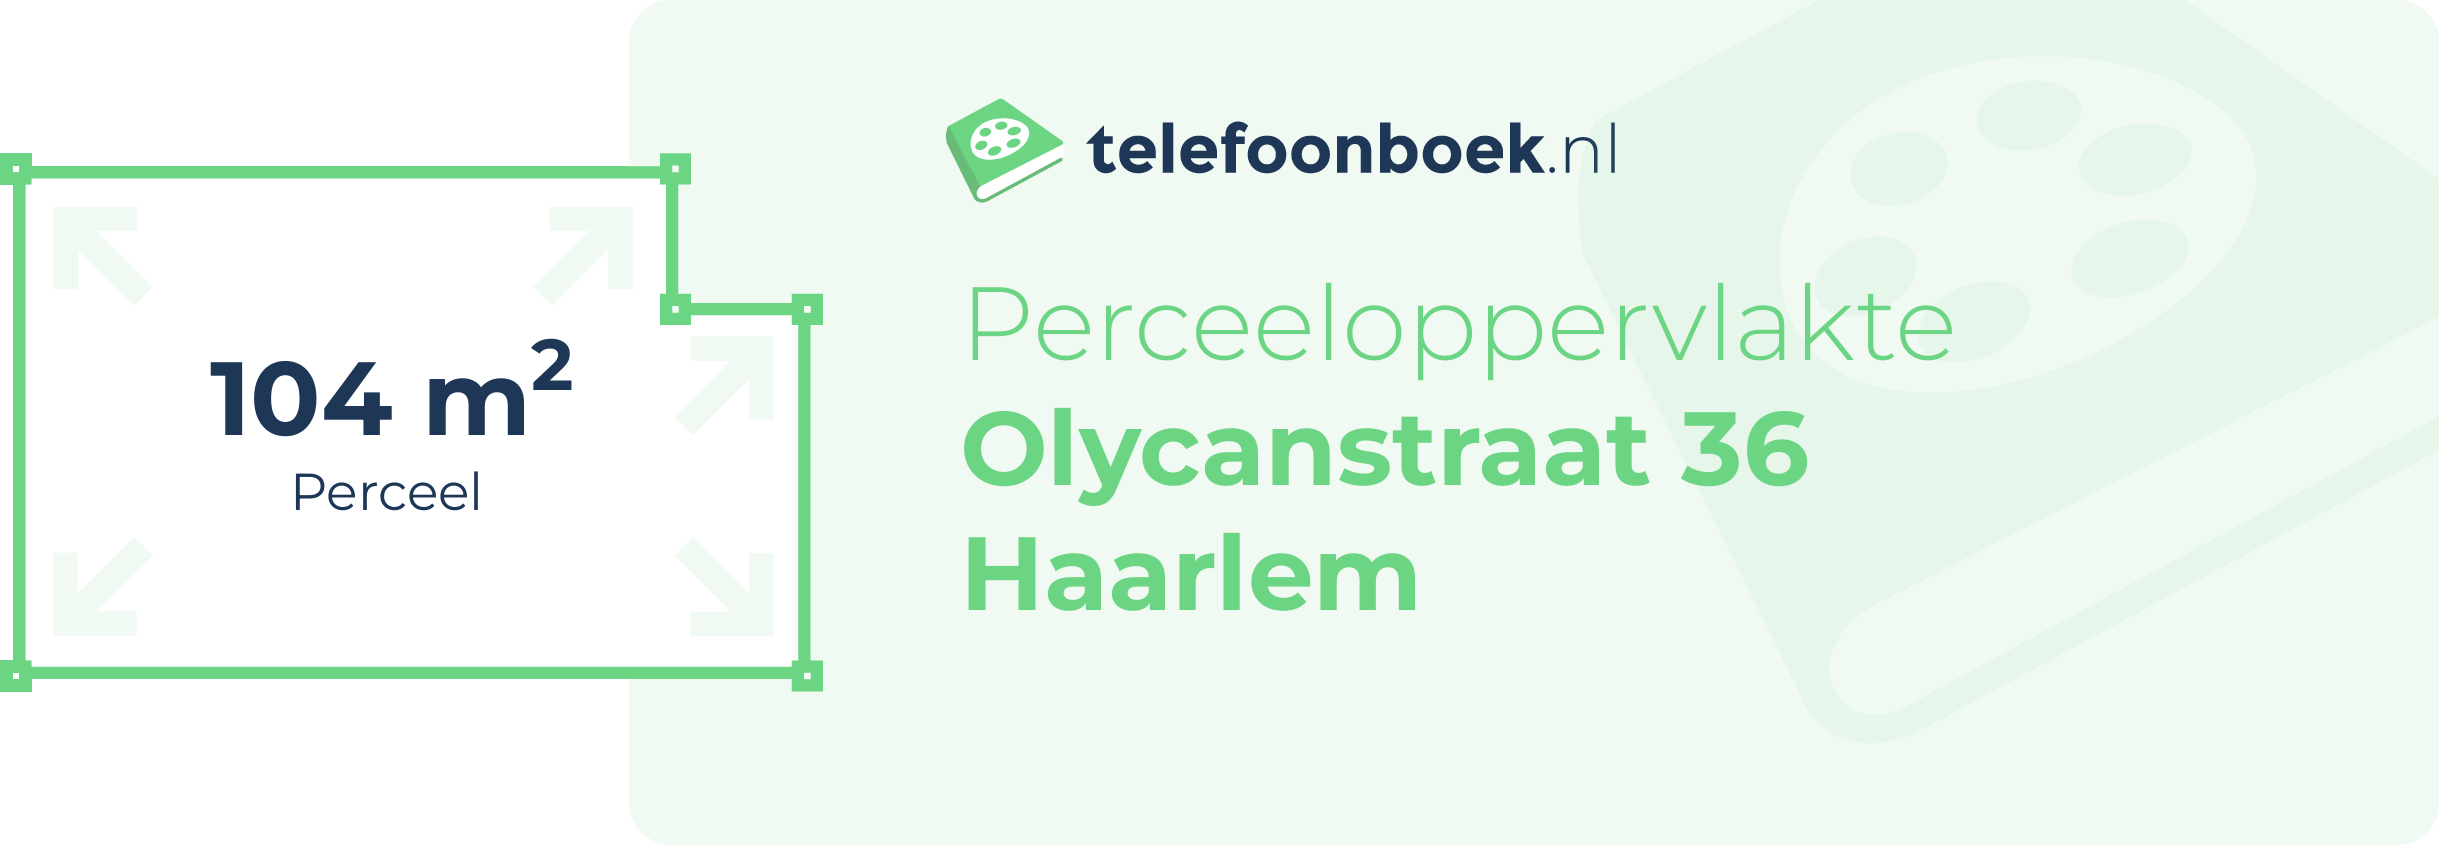 Perceeloppervlakte Olycanstraat 36 Haarlem